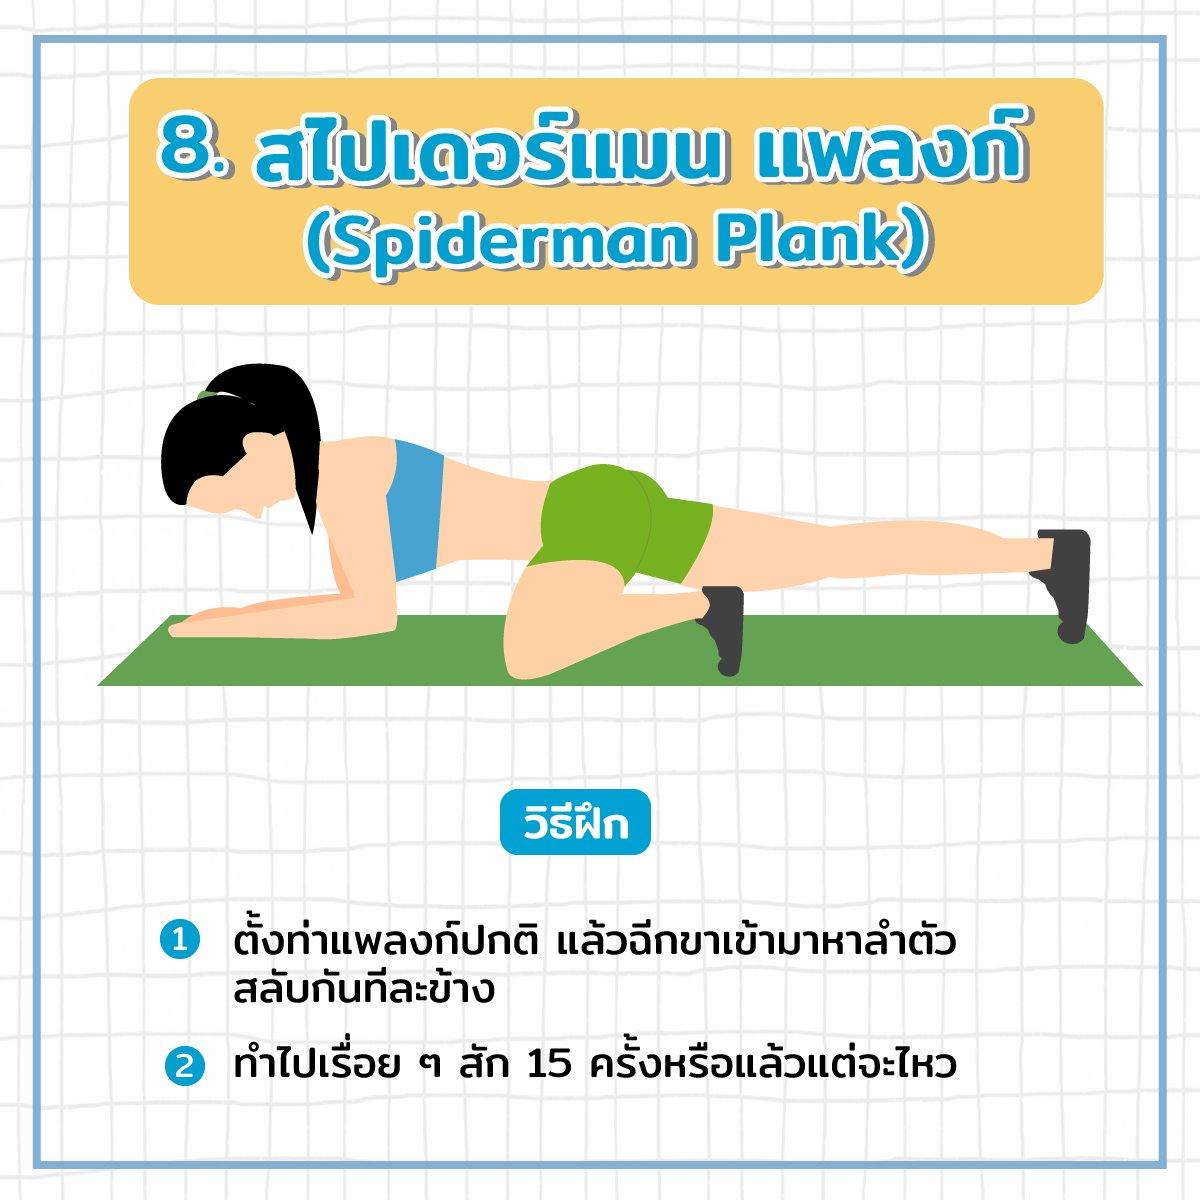 สไปเดอร์แมน แพลงก์ (spiderman plank)